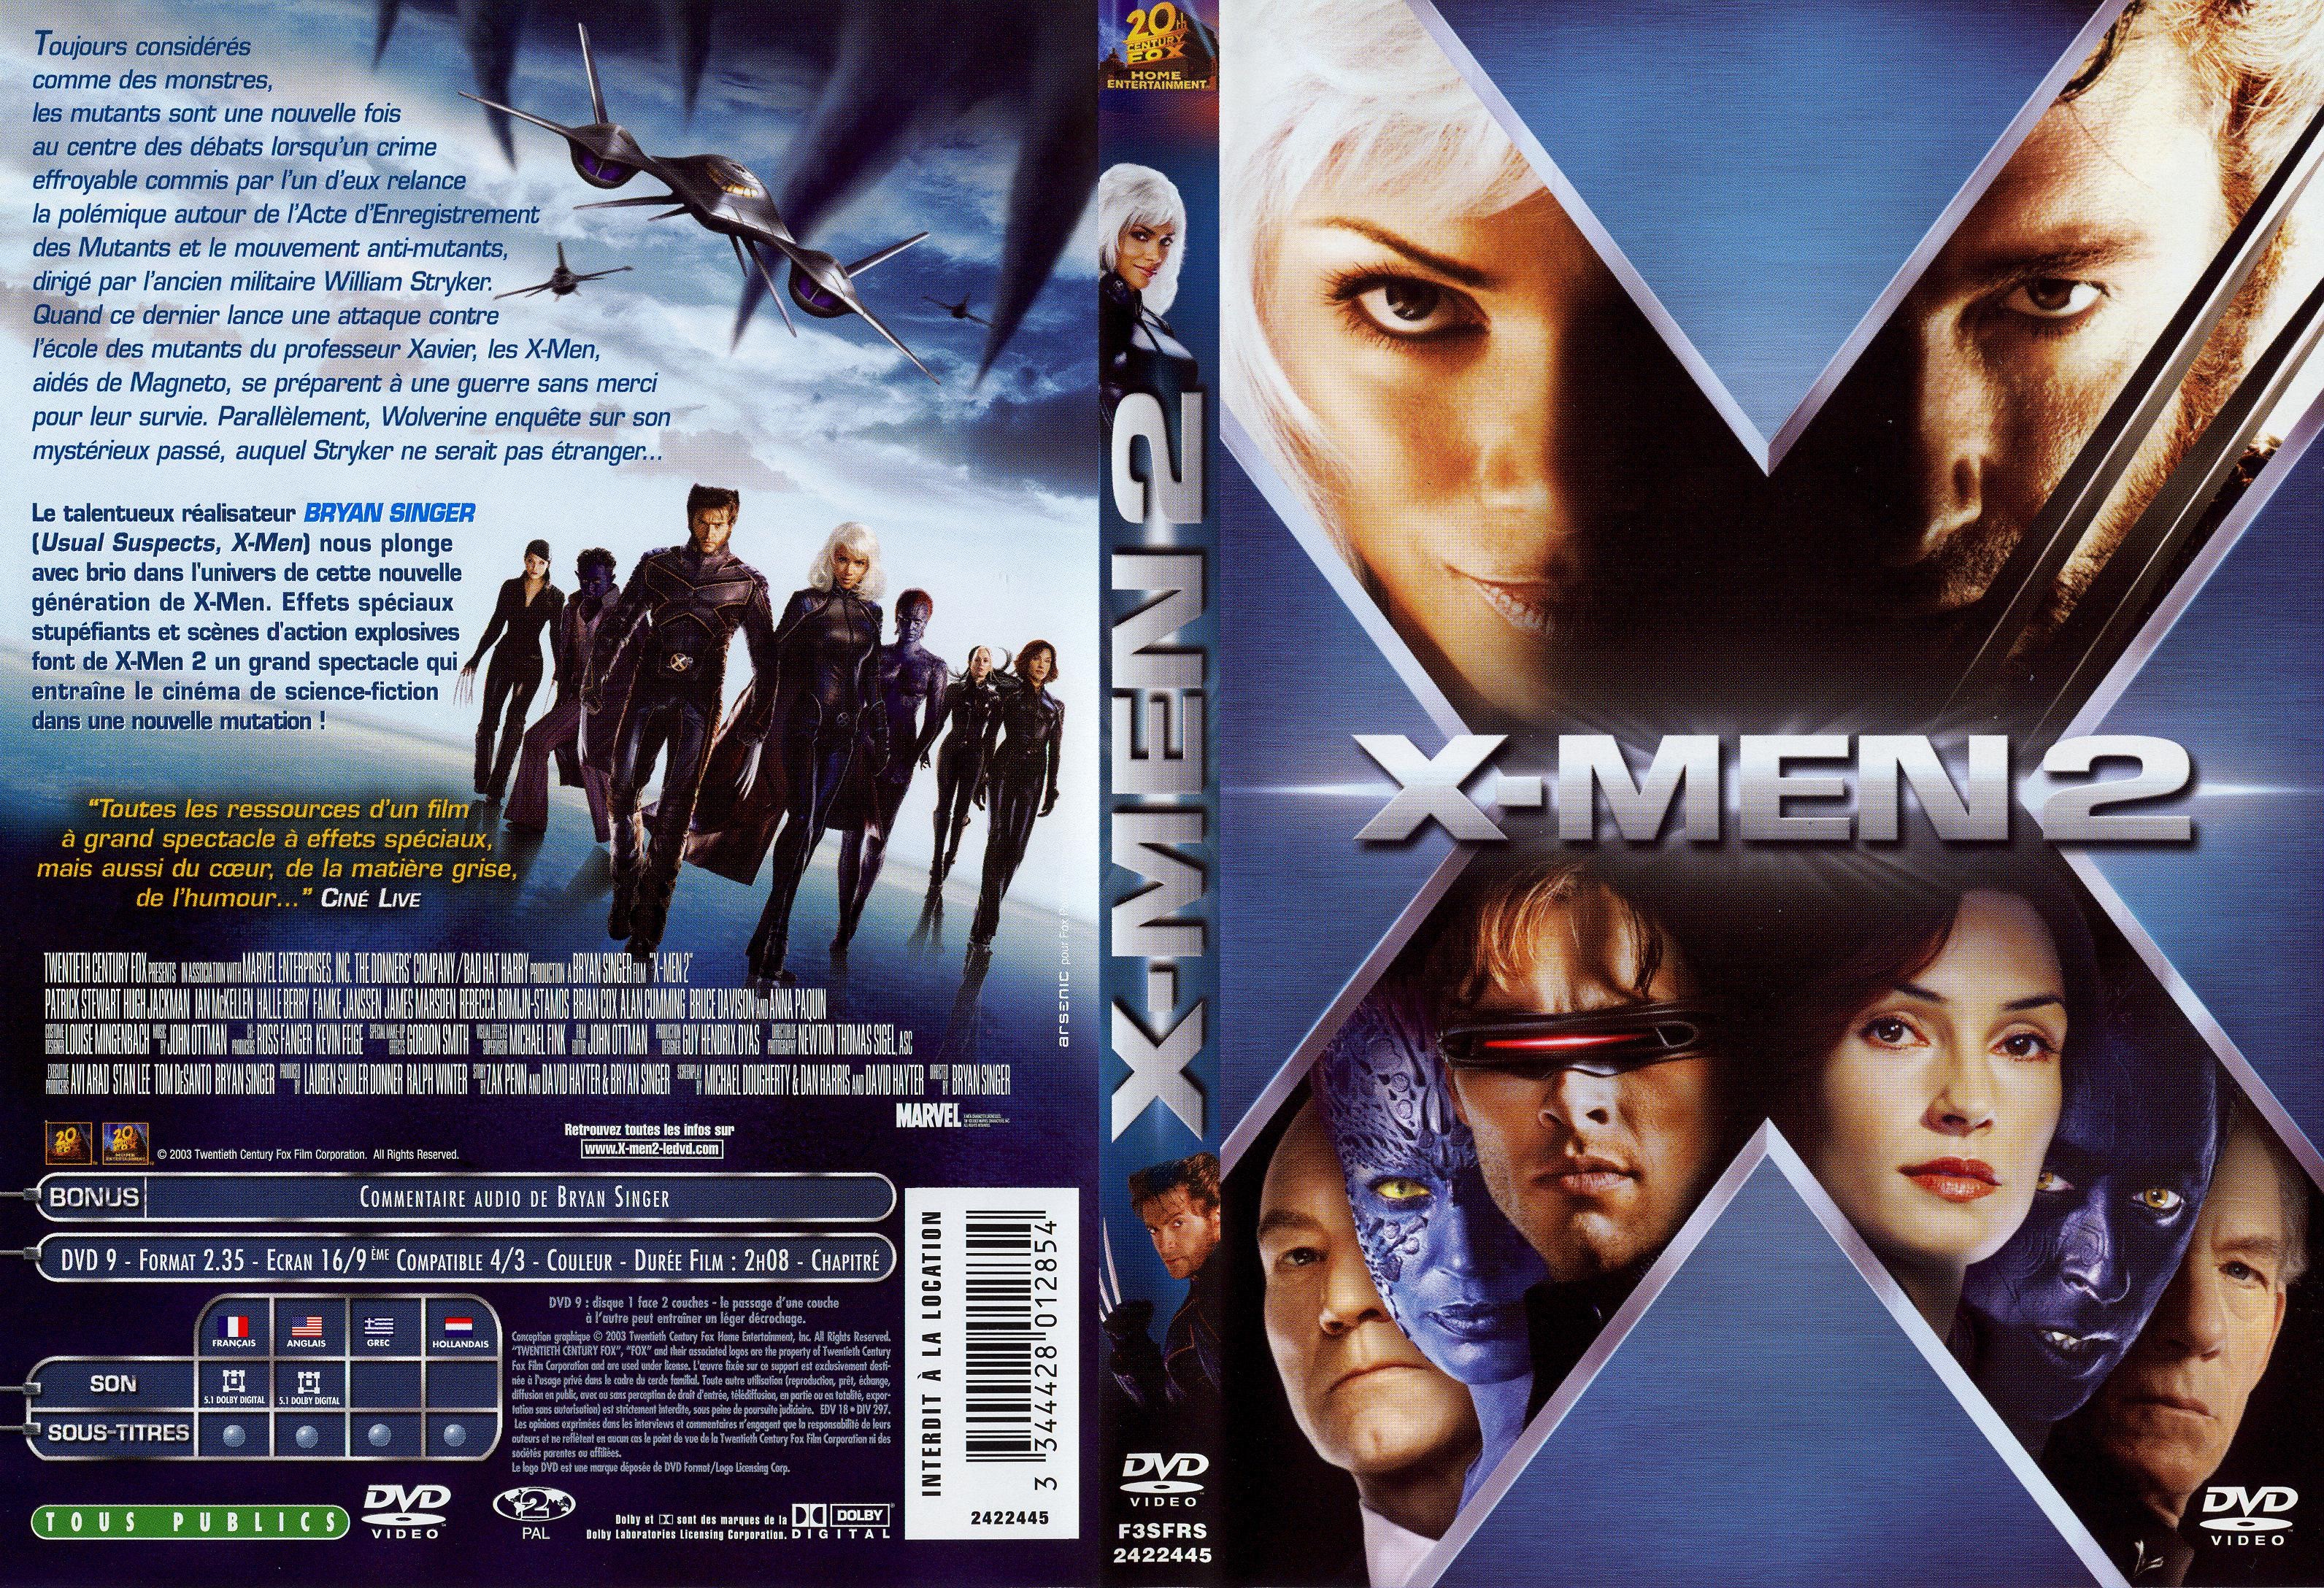 Jaquette DVD X-men 2 v2